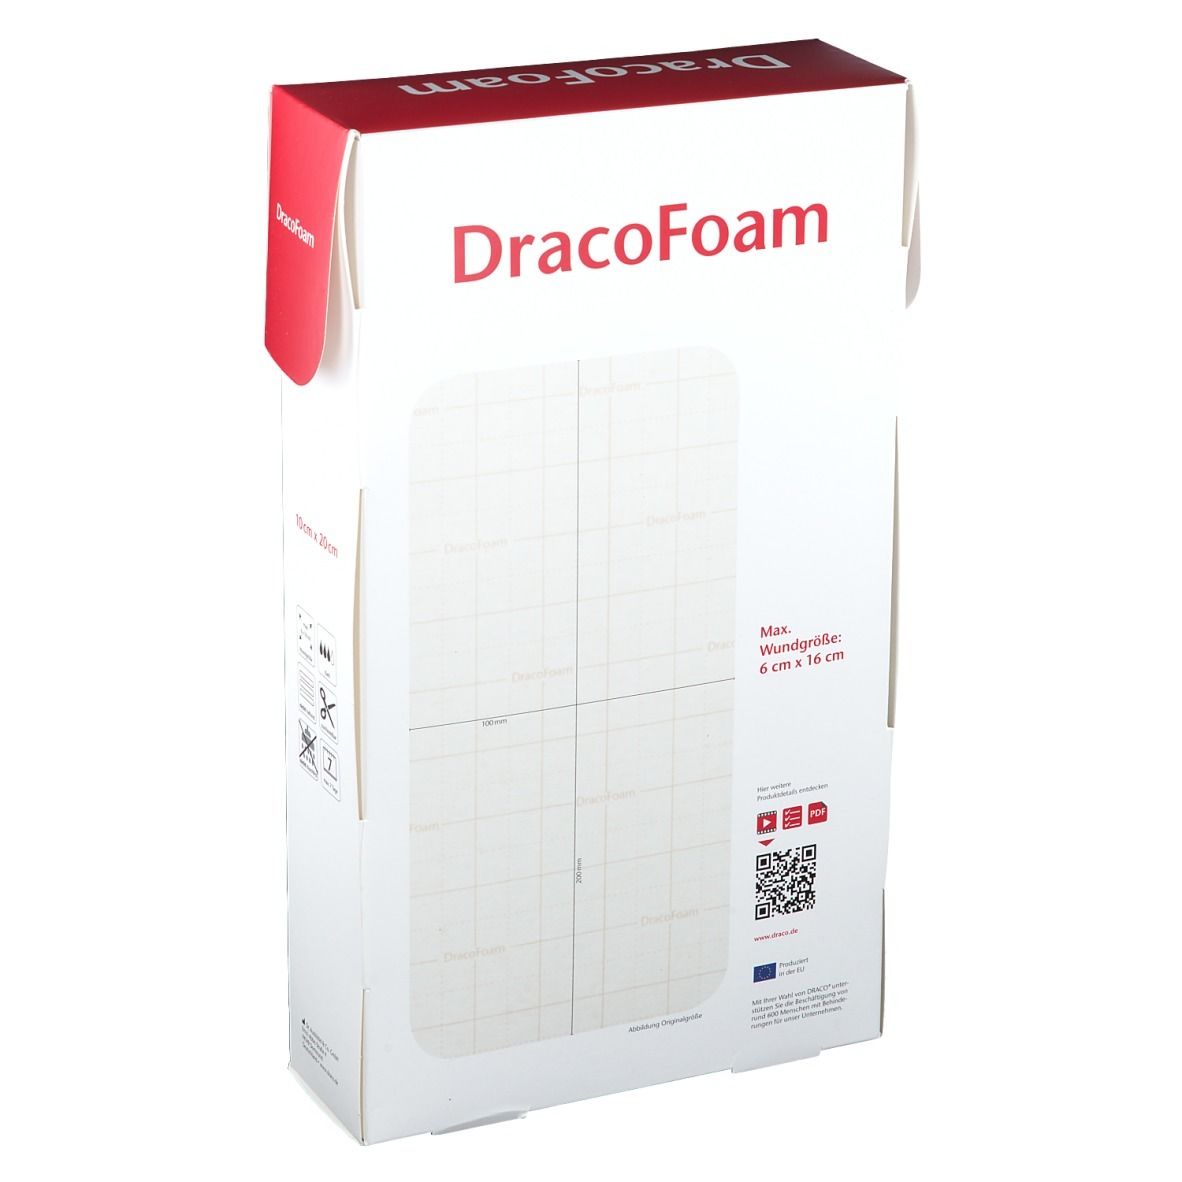 DracoFoam Schaumstoffwundauflage 10 x 20 cm